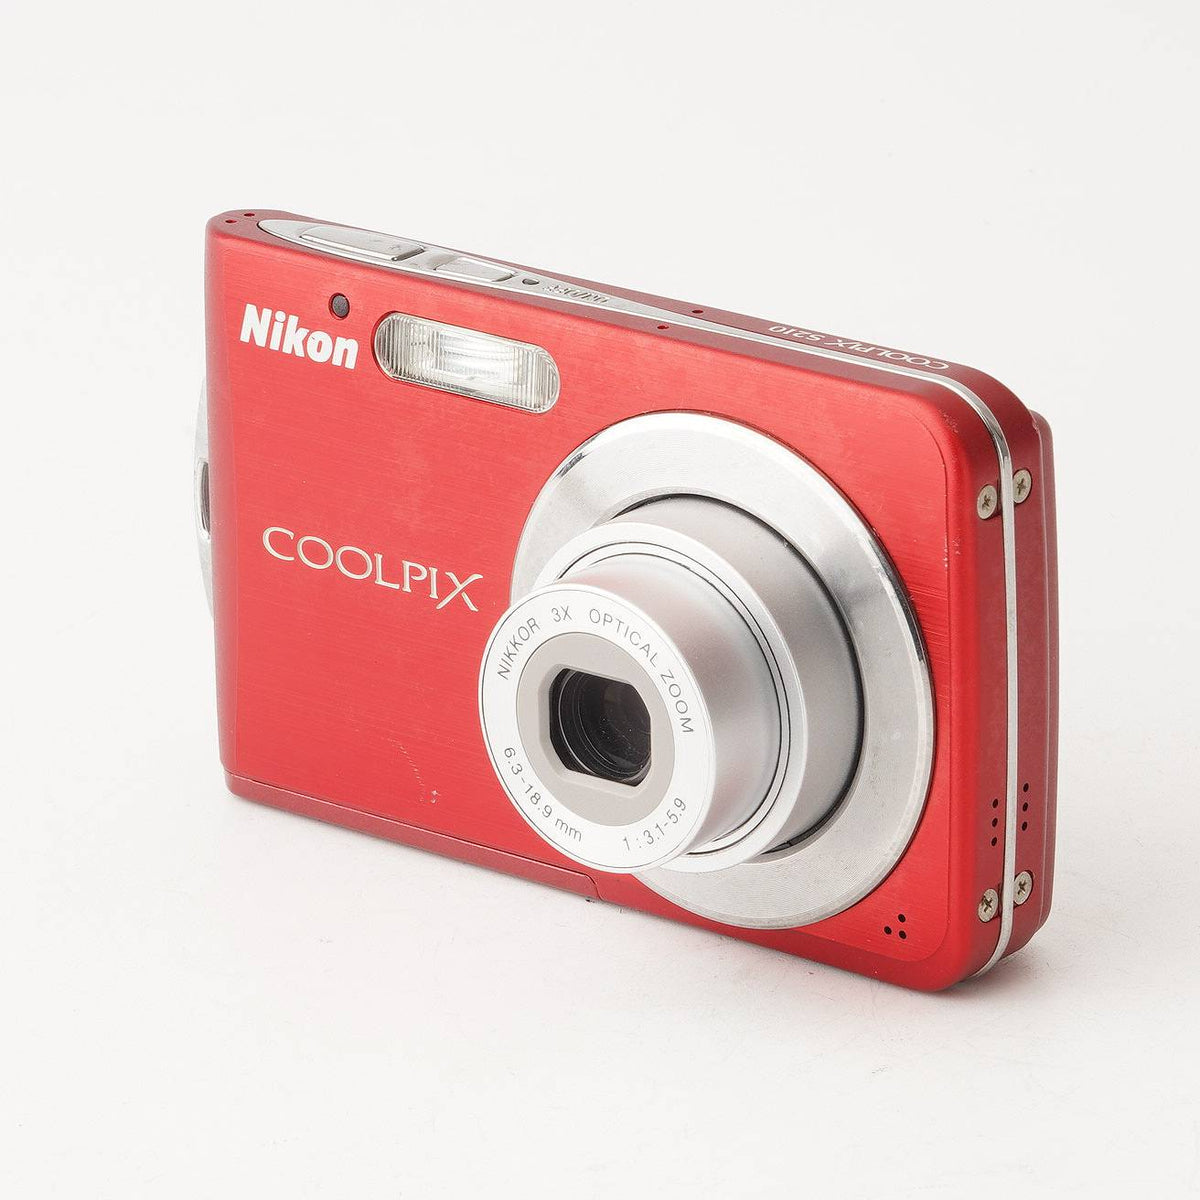 ニコン Nikon COOLPIX S210 / NIKKOR 3X OPTICAL ZOOM 6.3-18.9mm F3.1-5.9